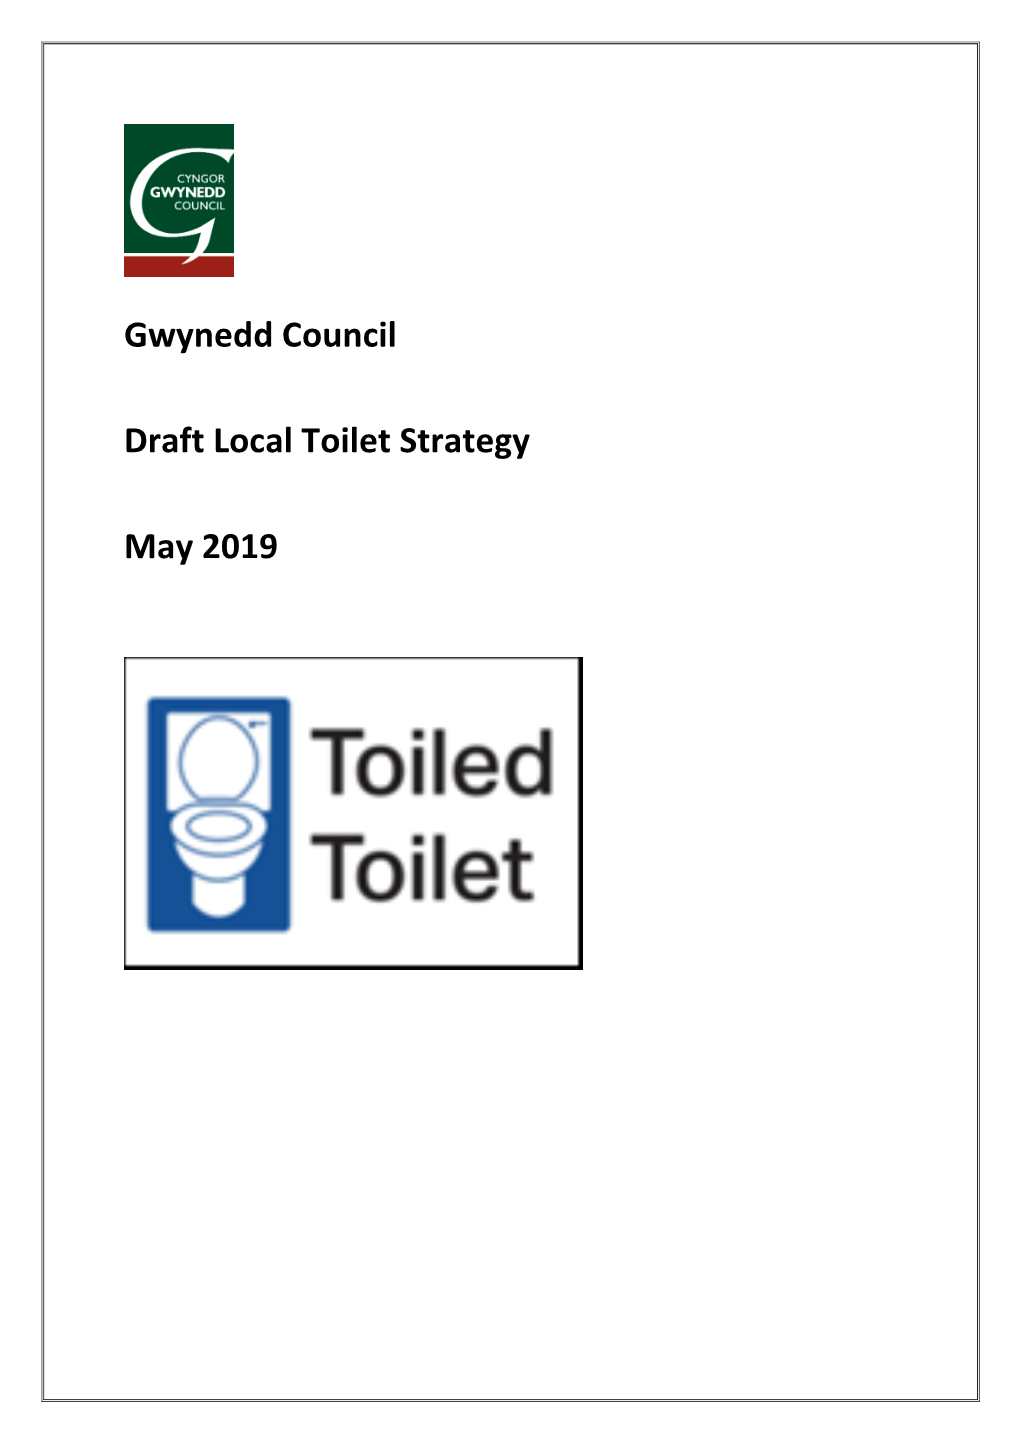 Gwynedd Council Draft Local Toilet Strategy May 2019